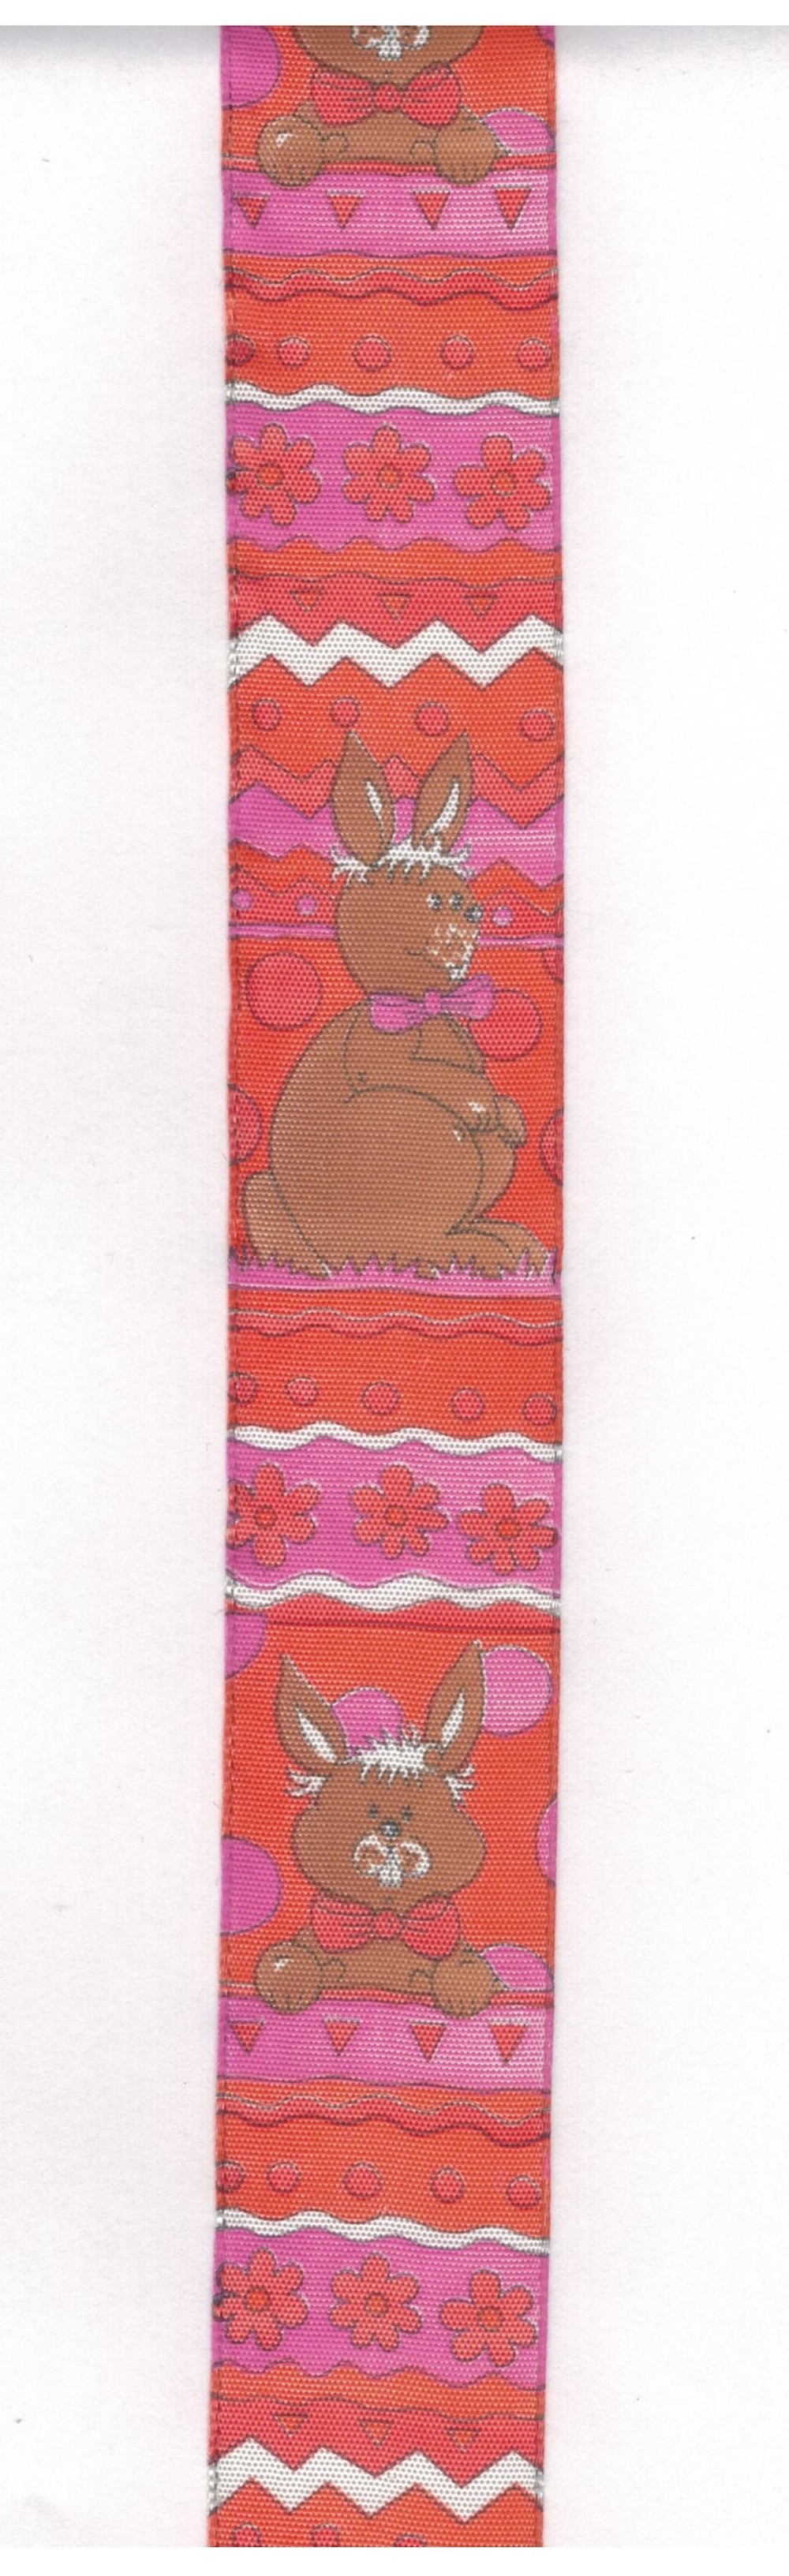 Geschenkband mit Drahtkante, 4 cm breit, braune Hasen auf orange/pinkem Grund